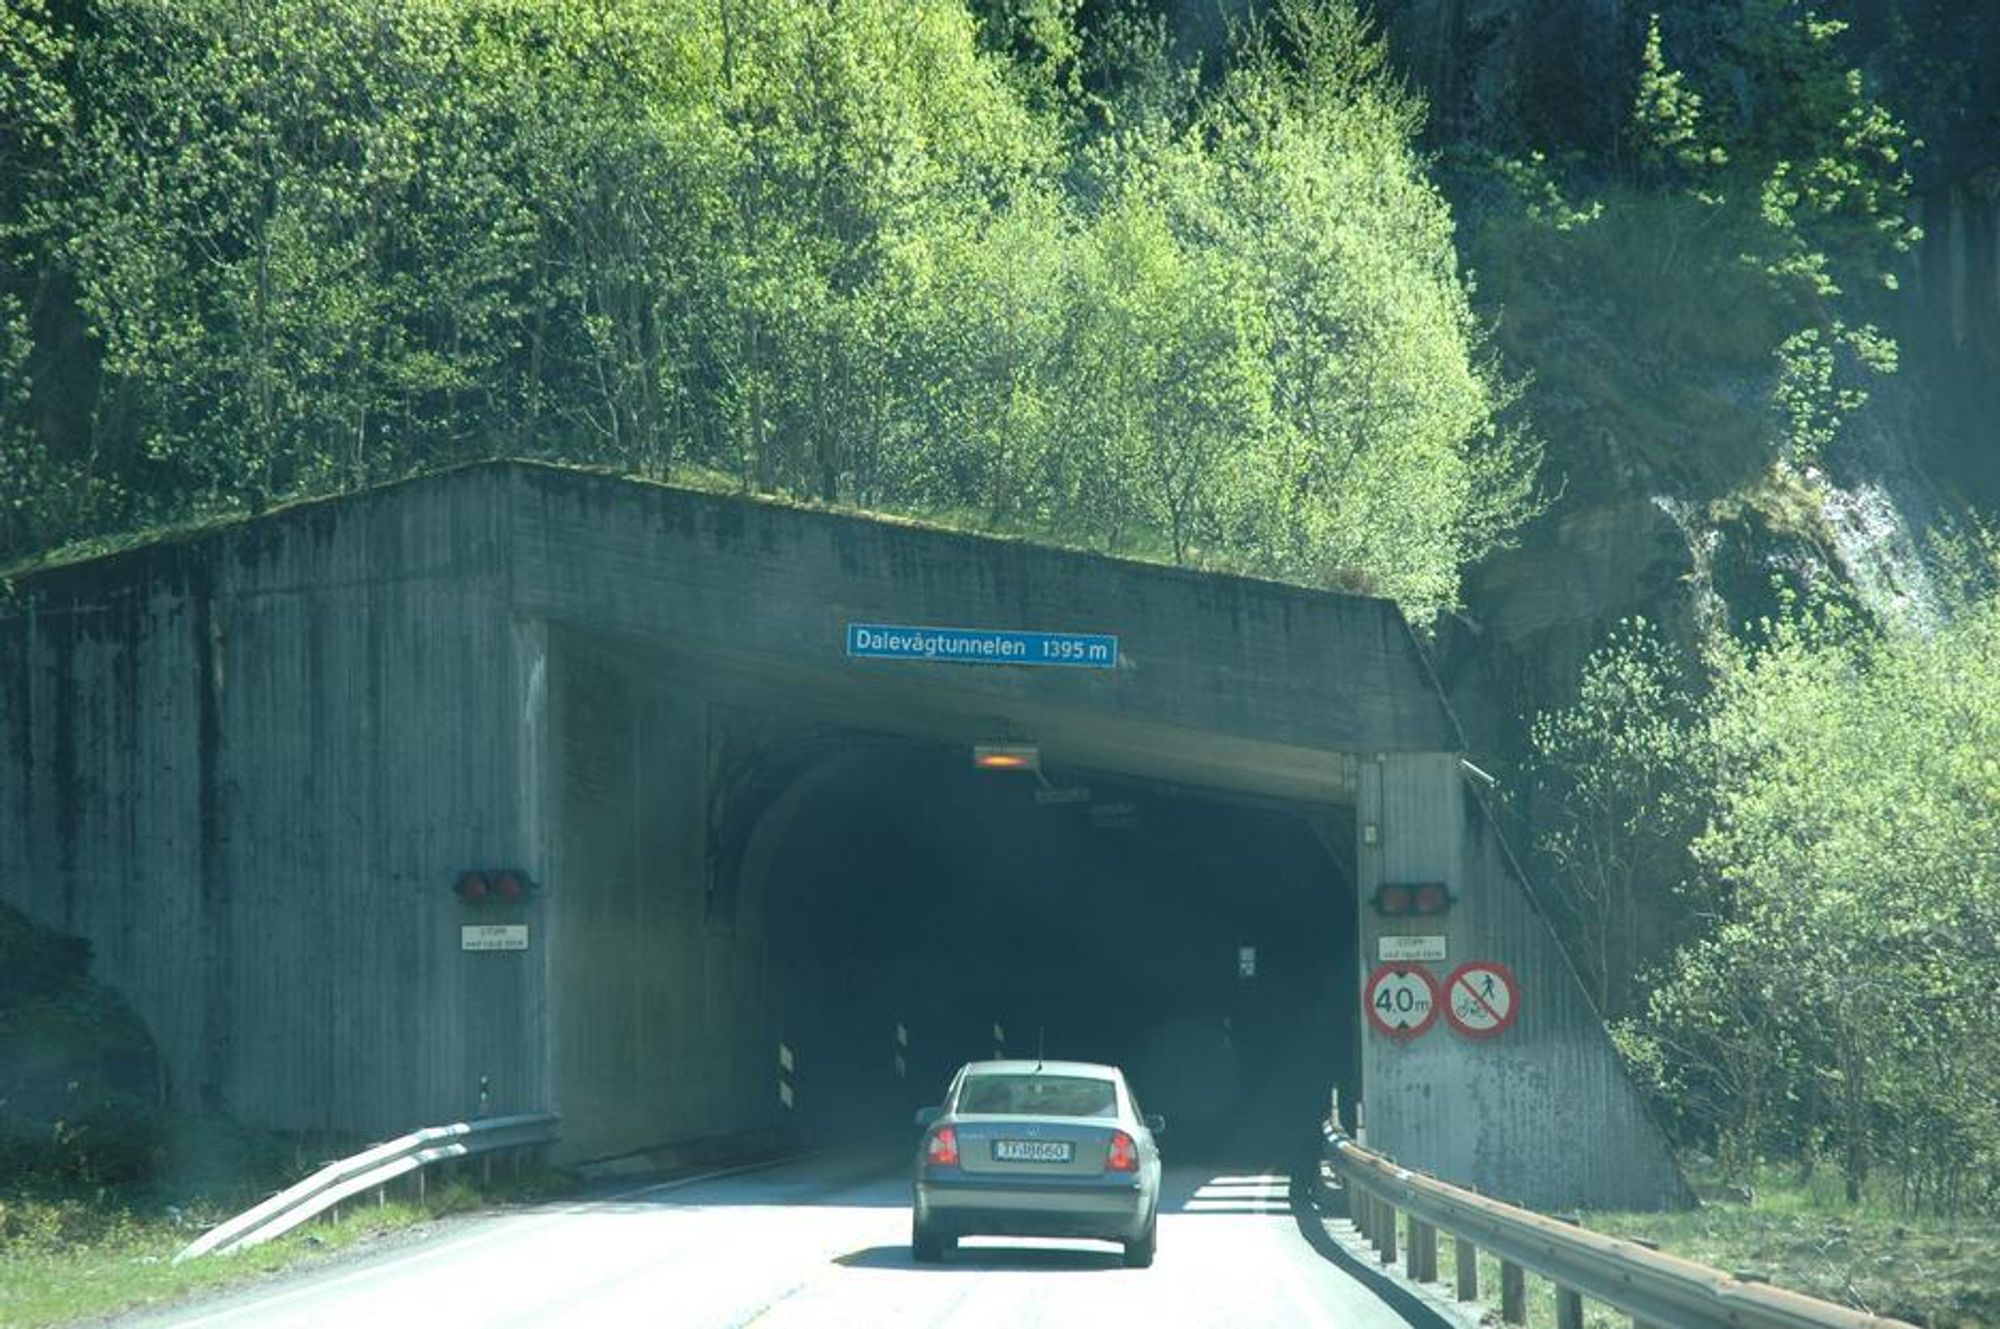 Dalevågtunnelen på E 16 skal utvides til 4,5 meters høyde og 9,5 meters bredde. Når jobben er gjort, er det ingen tunneler på E 16 mellom Bergen og Voss som har lavere fri høyde enn 4,3 meter.